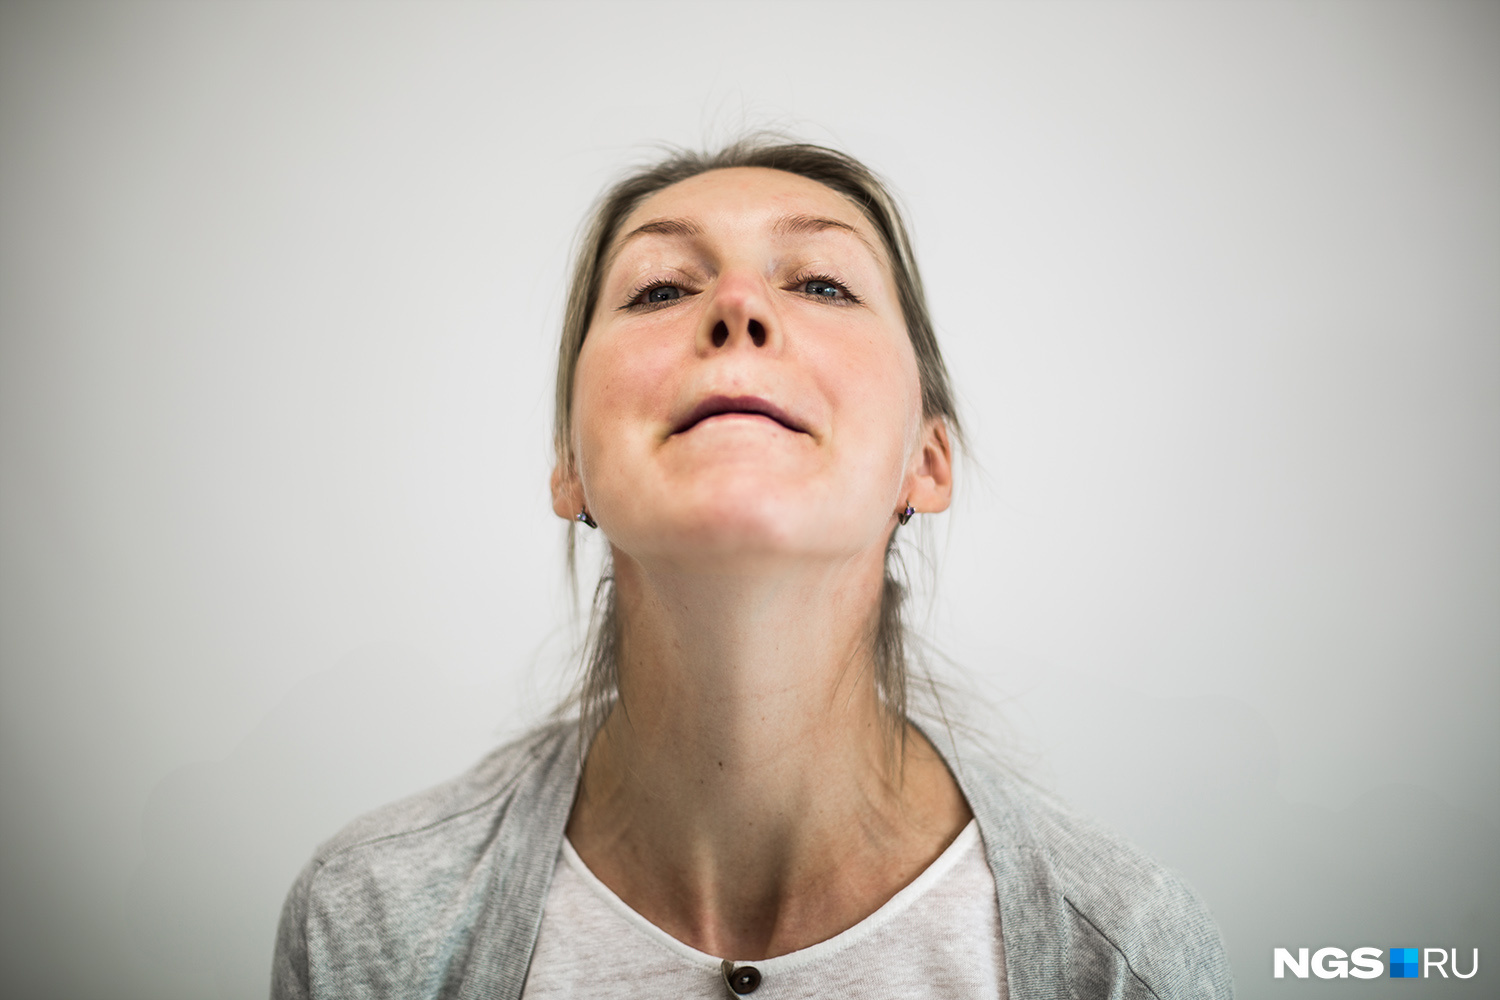 Растяните губы в стороны, поднимите подбородок вверх. Открывайте и закрывайте челюсть, используя мышцы в уголках рта. Выдвигайте подбородок на 1 см каждый раз, когда делаете черпающее движение. Выполните 30–35 раз.